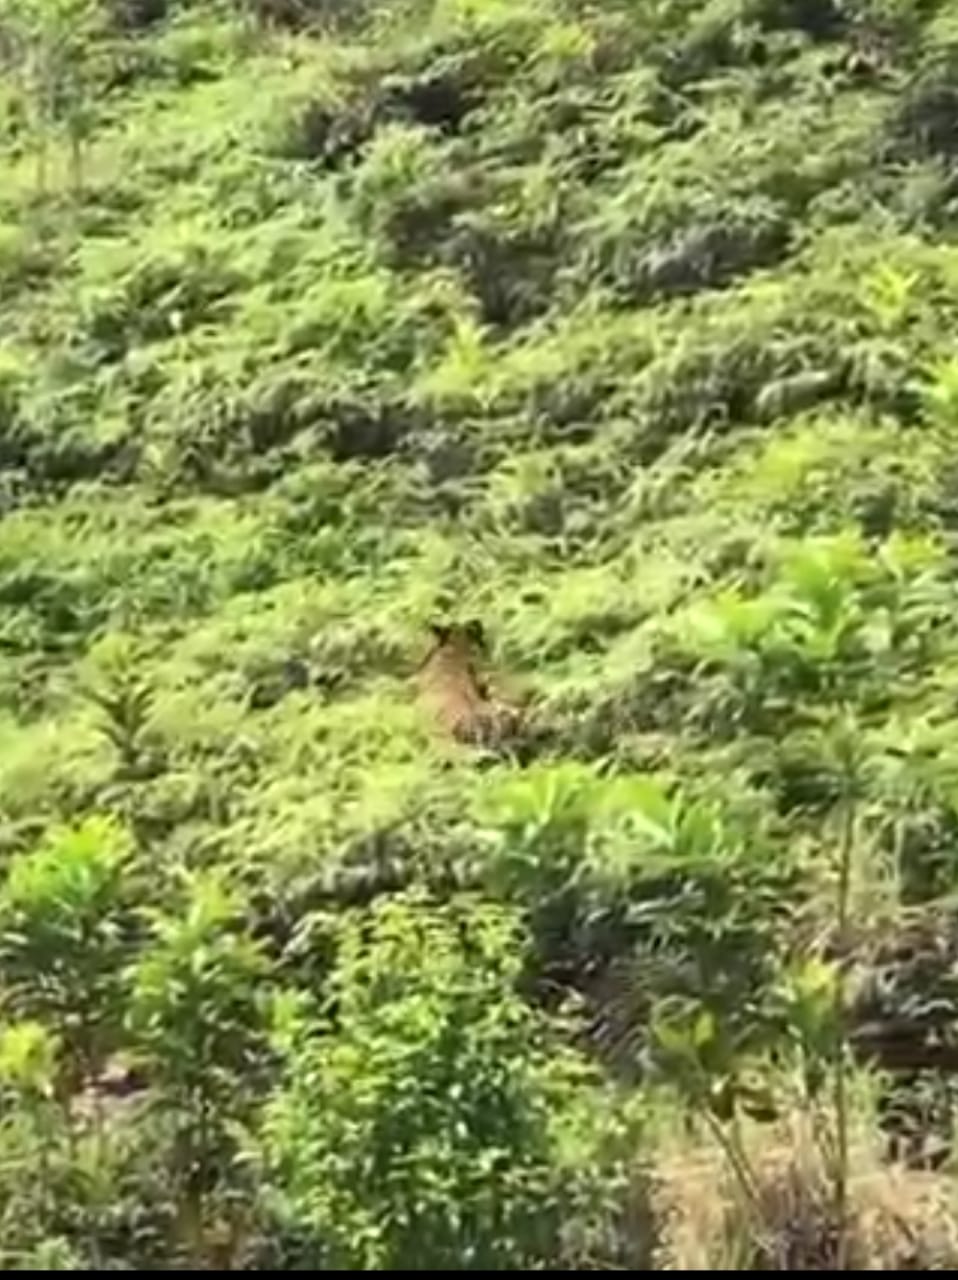 东：一头老虎被人发现在乌鲁北加一带的山林出没，吓坏当地居民。